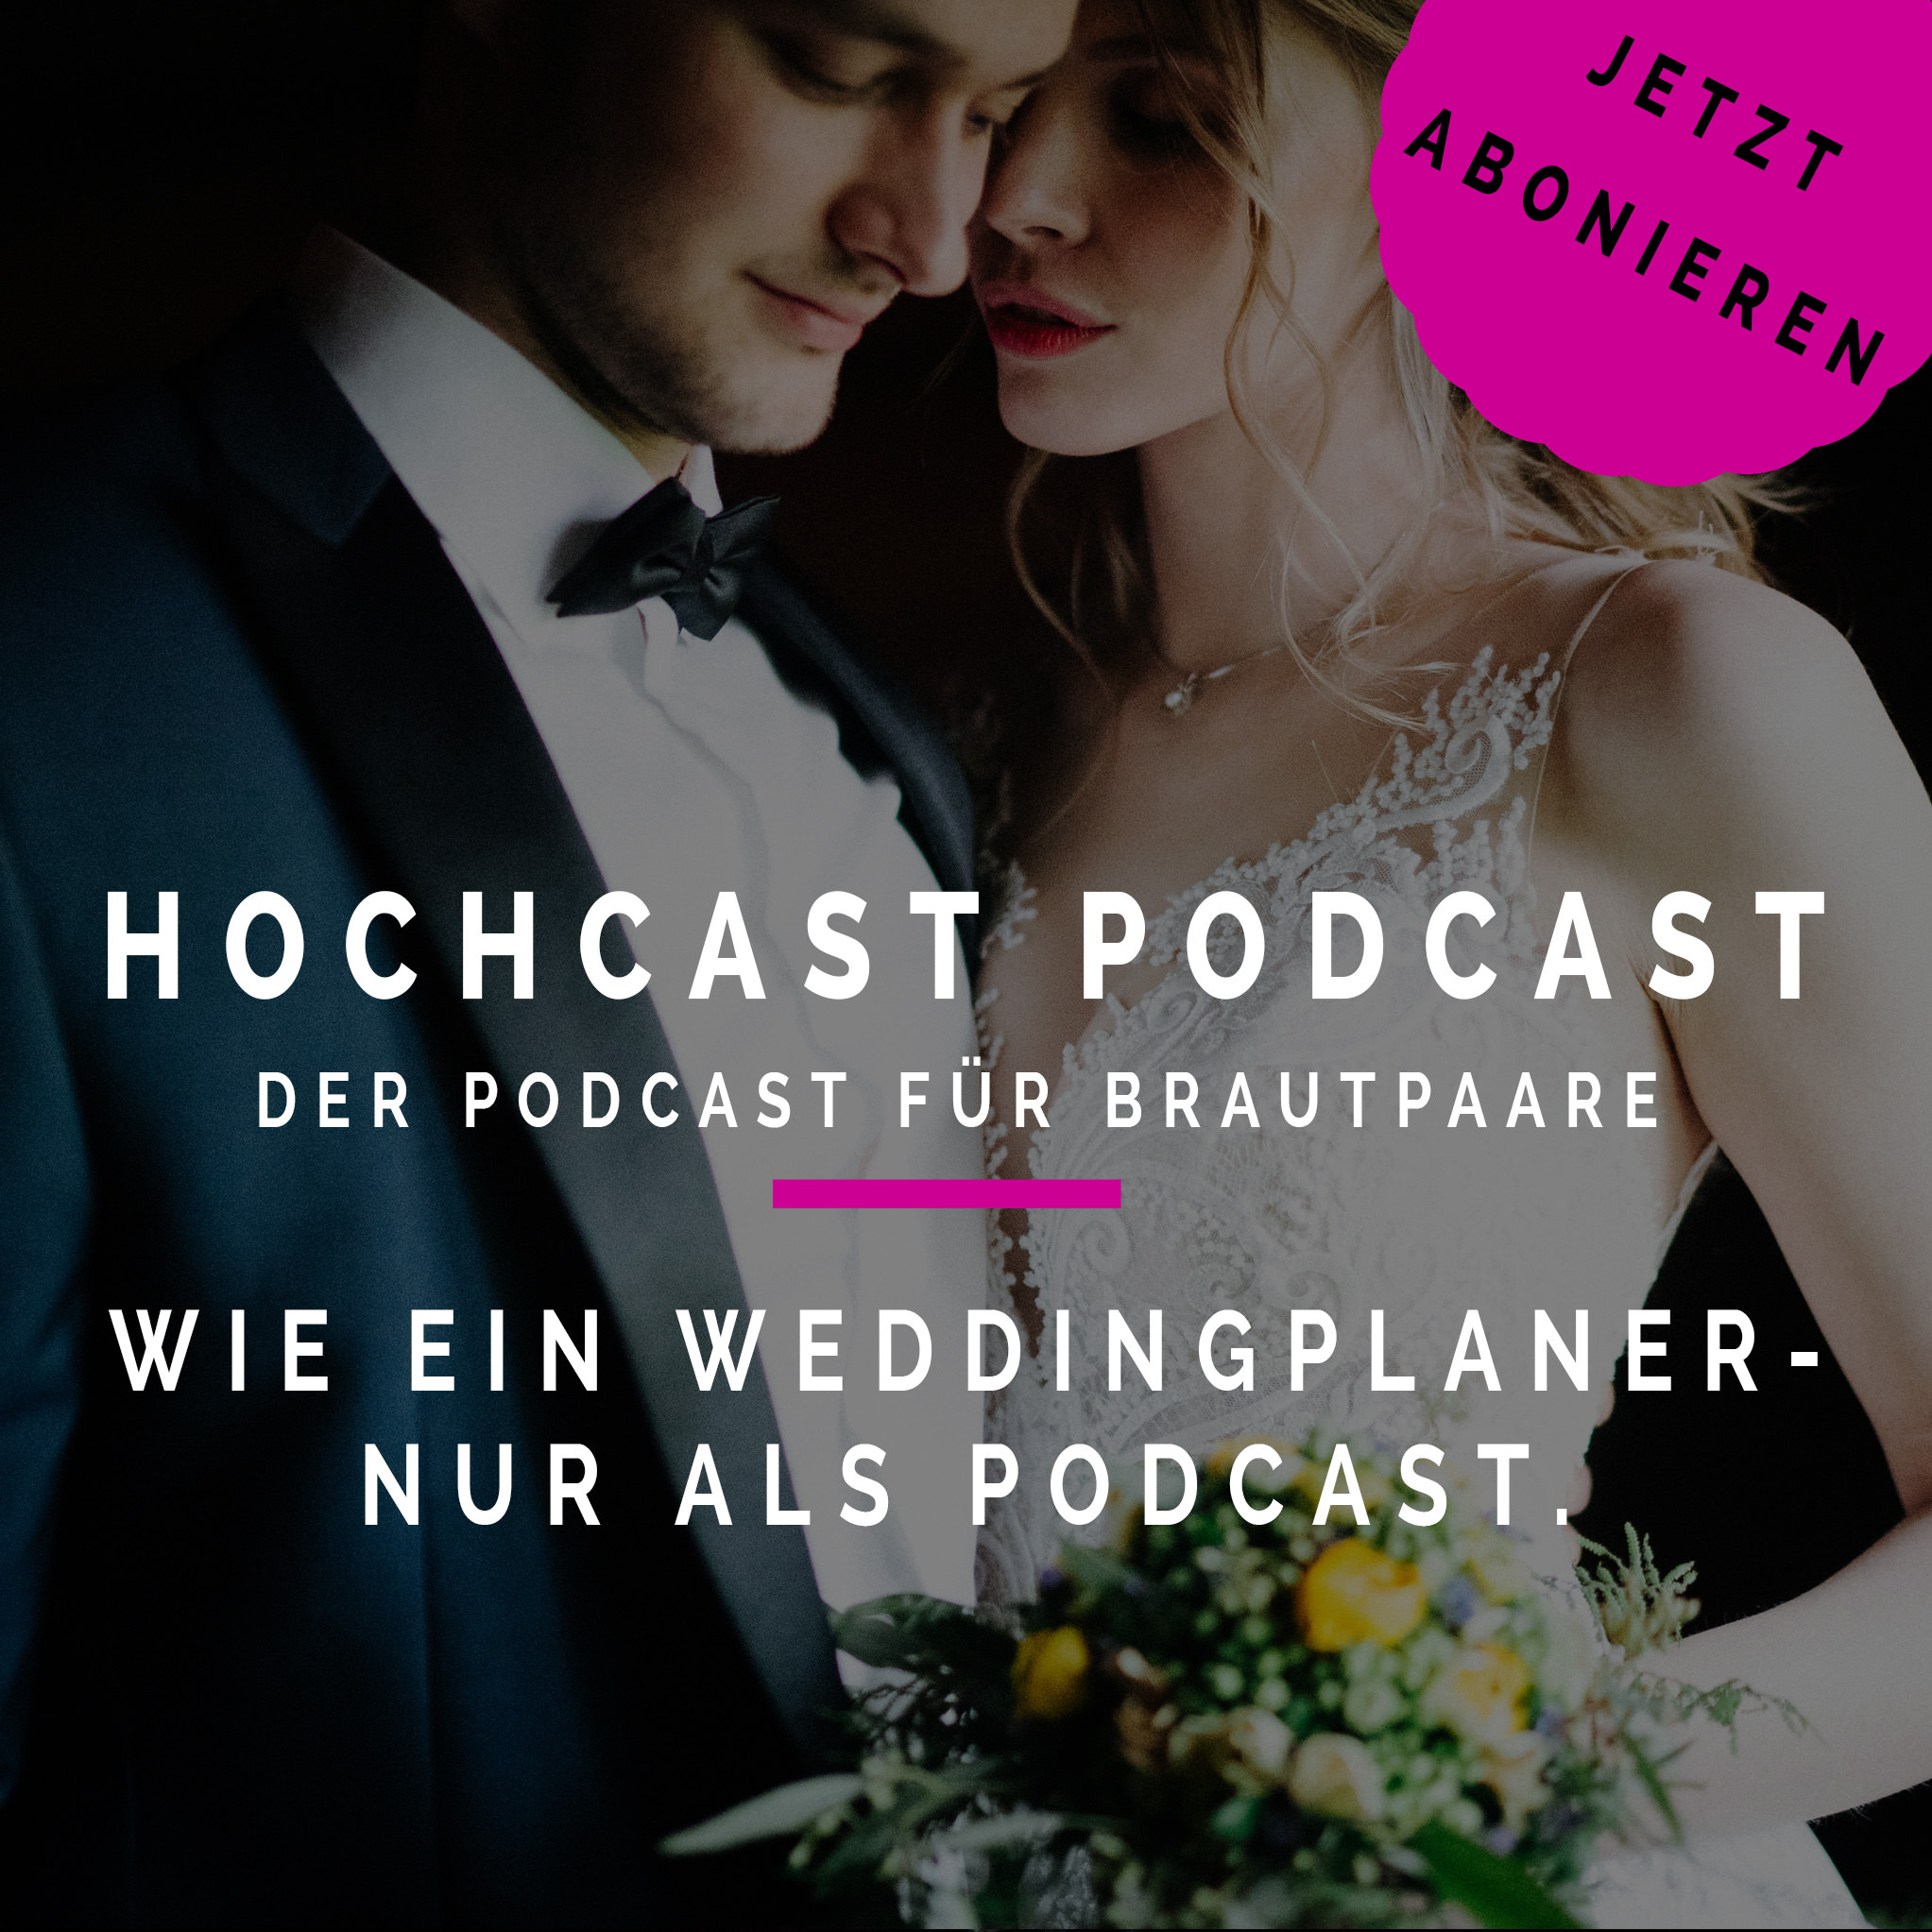 Hochcast Podcast - Der Podcast für Brautpaare